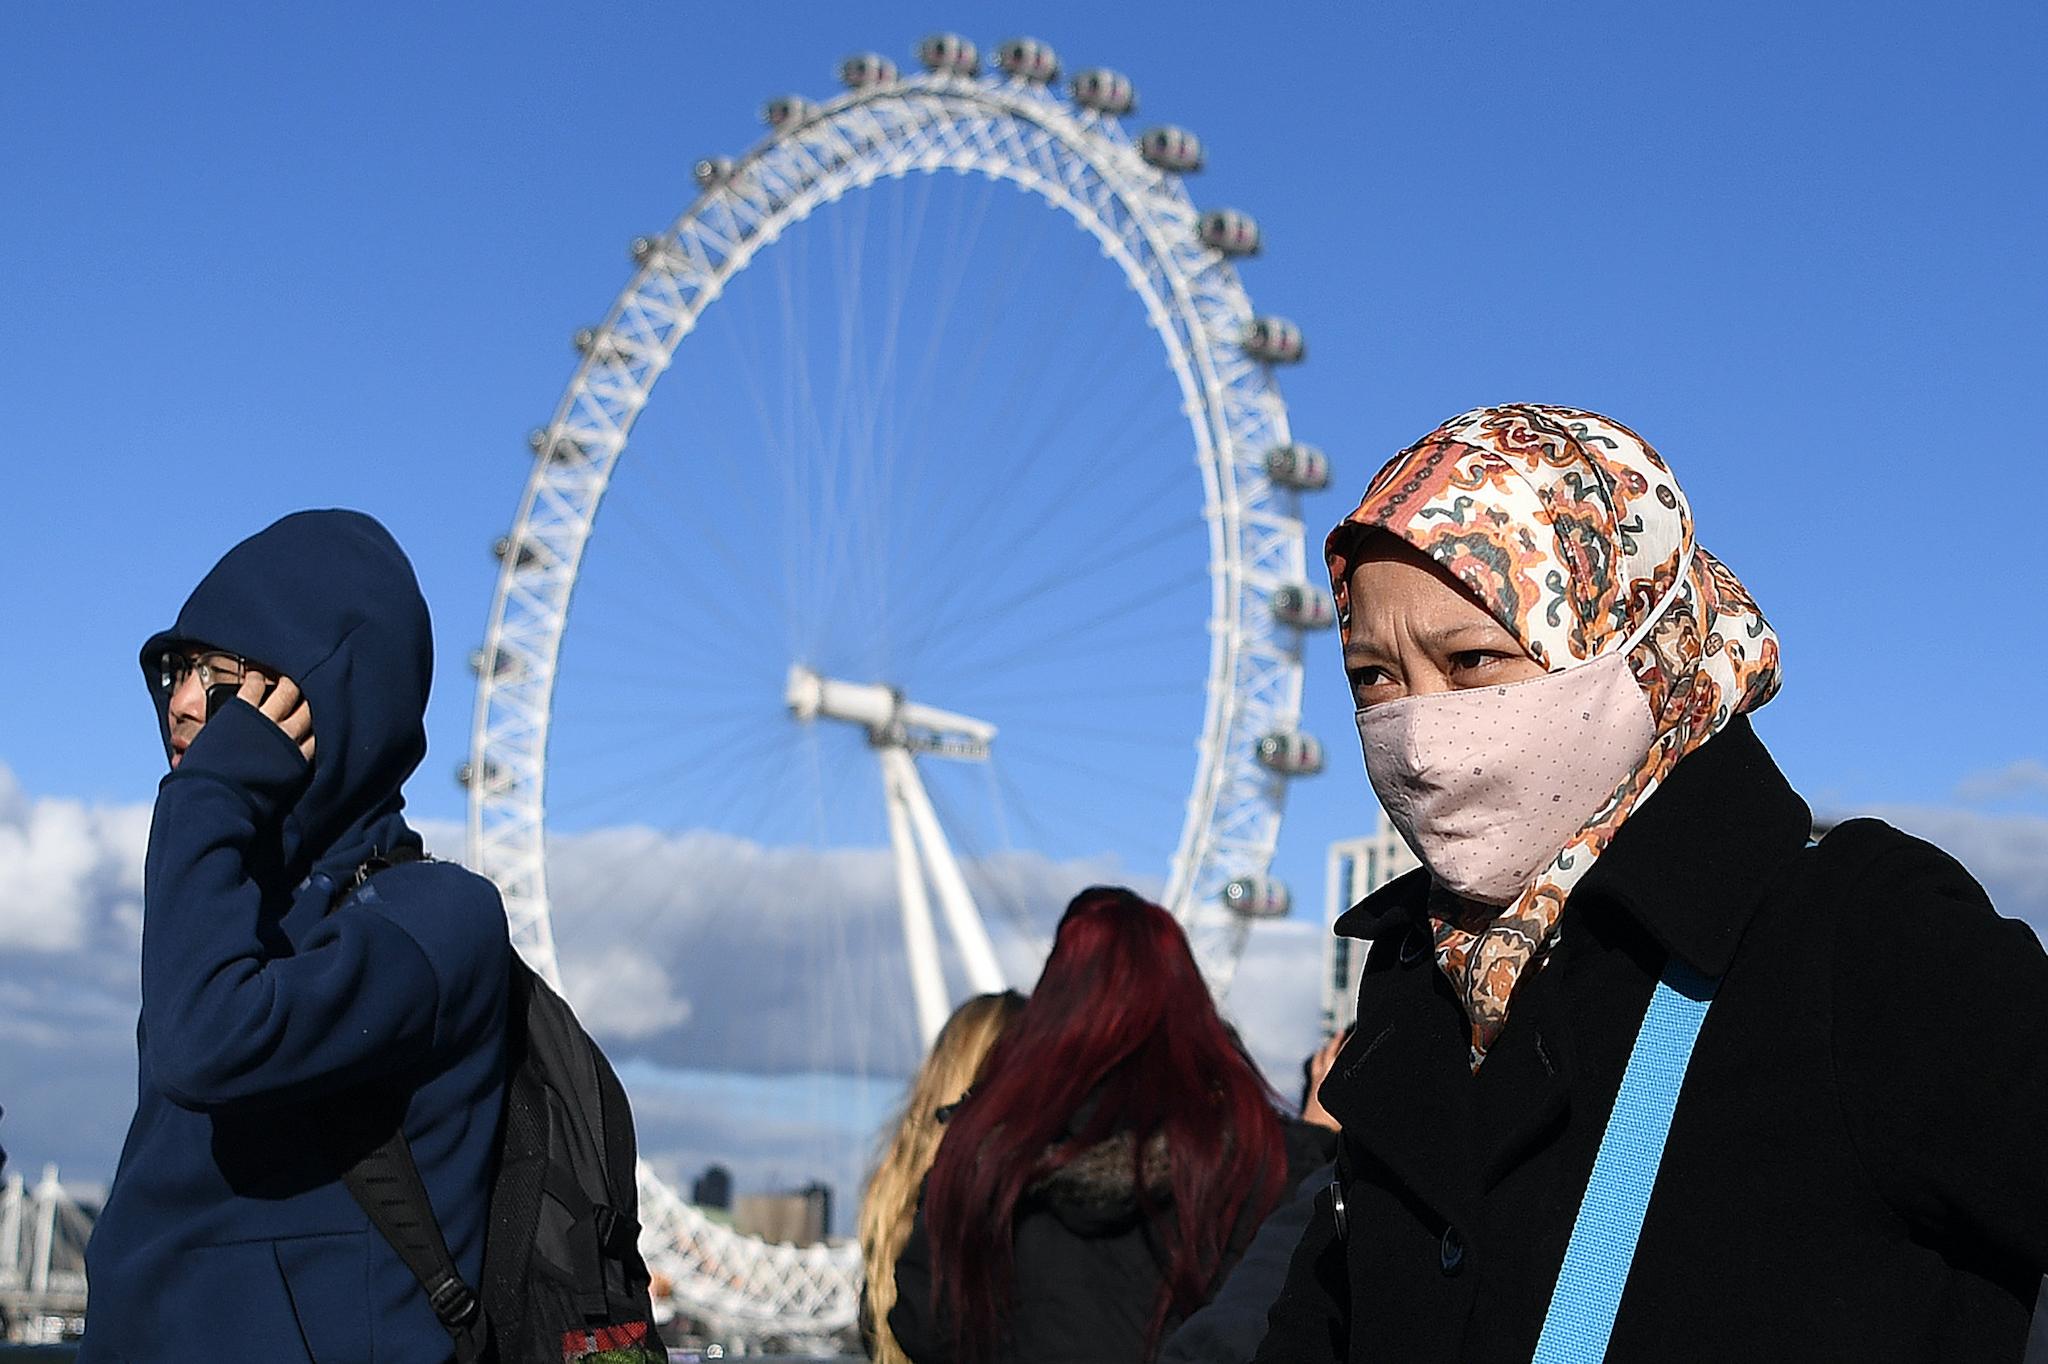 A woman wearing a face mask walks across Westminster Bridge, near the London Eye landmark in central London on March 2, 2020